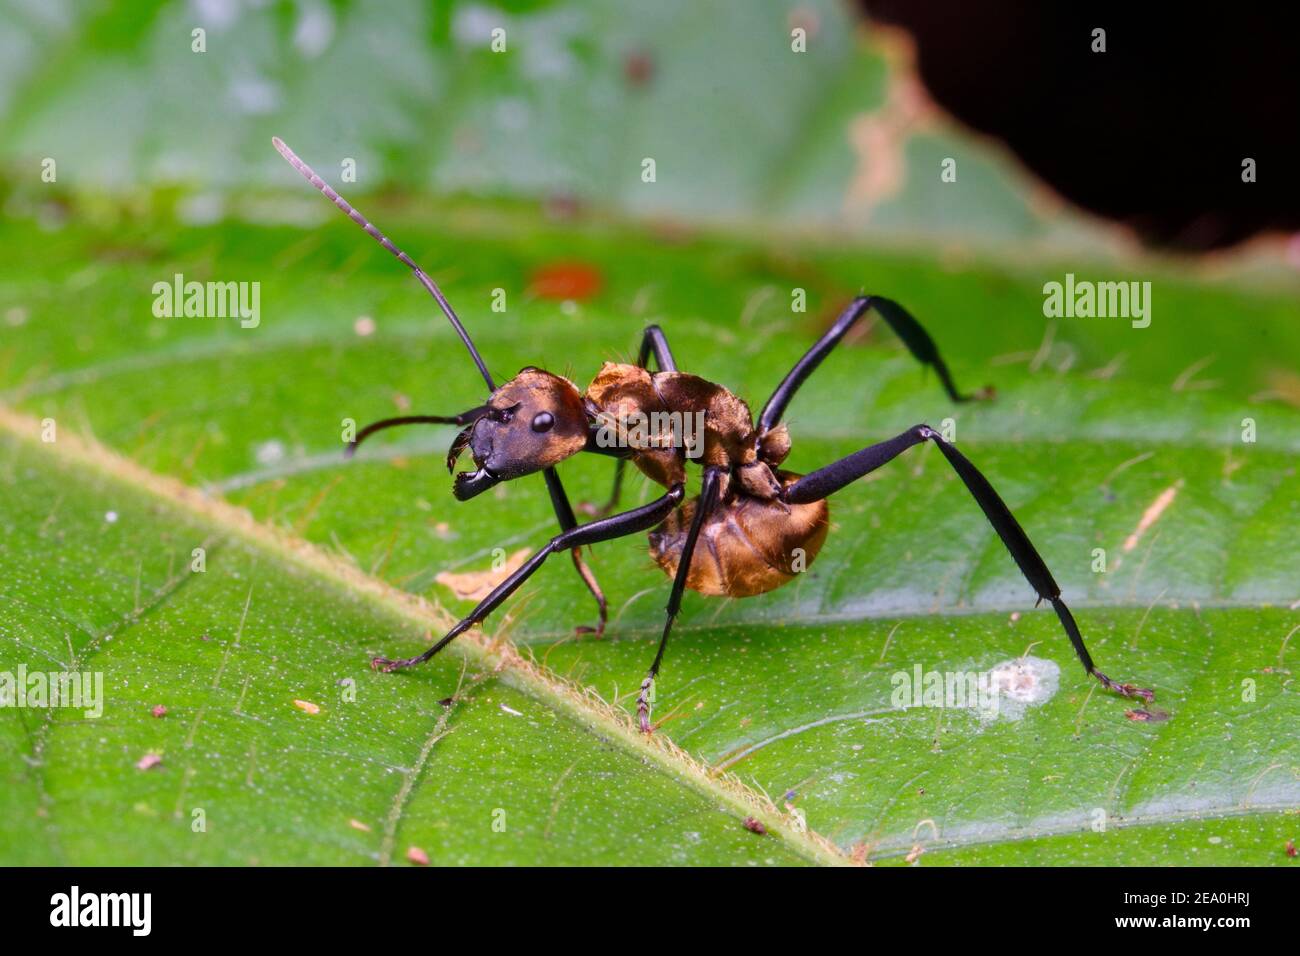 Eine goldene Zimmermann-Ameise, Camponotus sericeiventris, in einer Verteidigungshaltung auf einem Blatt. Stockfoto